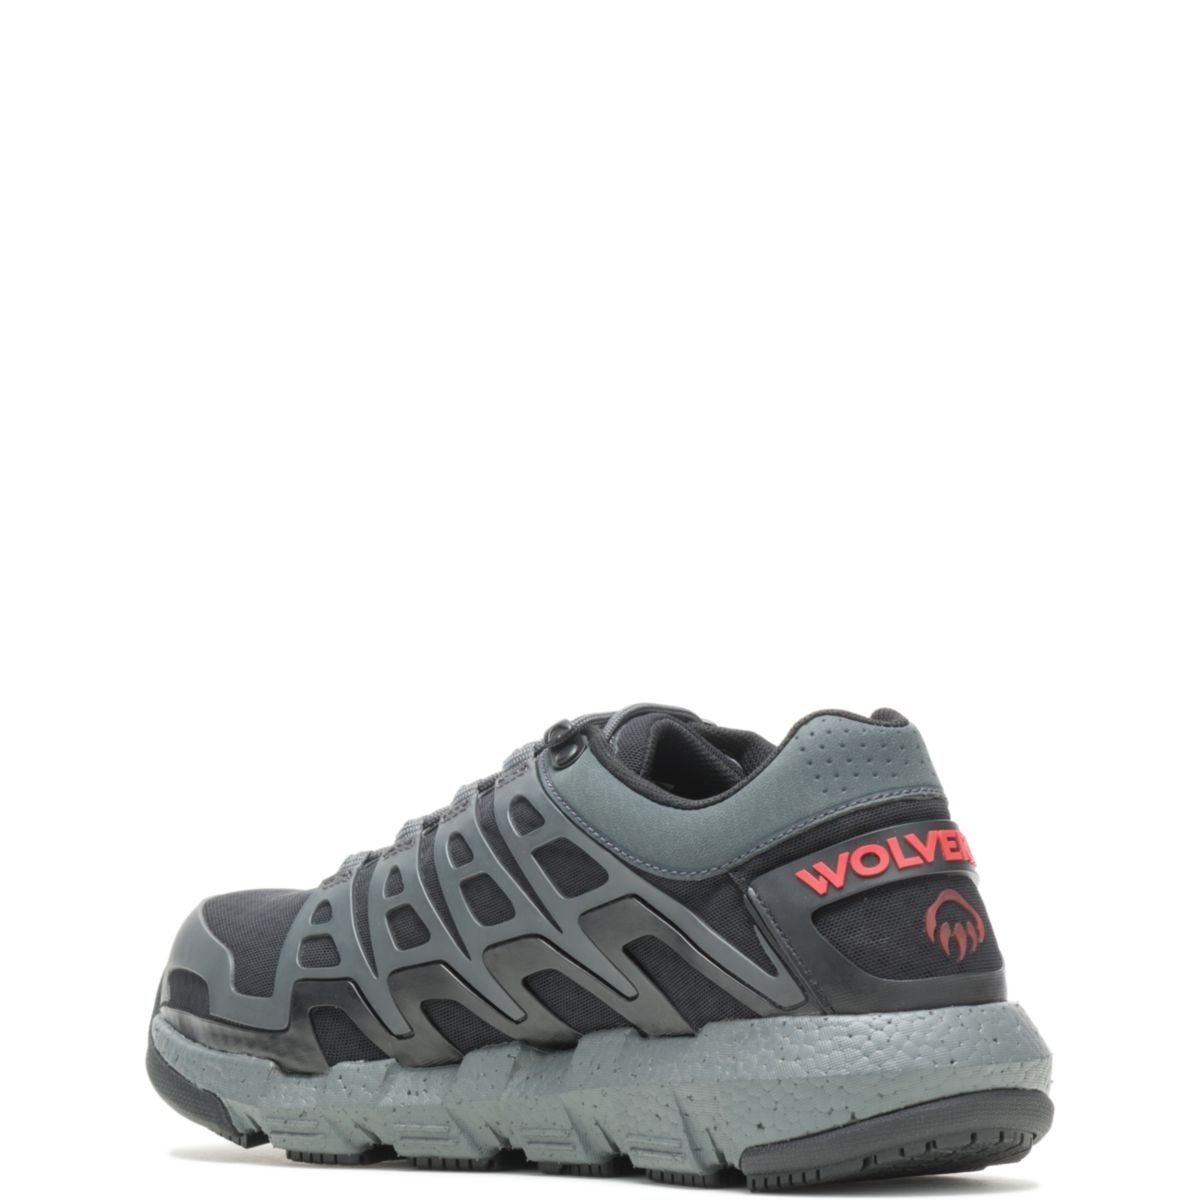 WOLVERINE Men's Rev Vent UltraSpringâ¢ DuraShocksÂ® CarbonMAXÂ® Composite Toe Work Shoe Charcoal - W211016 CHARCOAL - CHARCOAL, 9.5 X-Wide